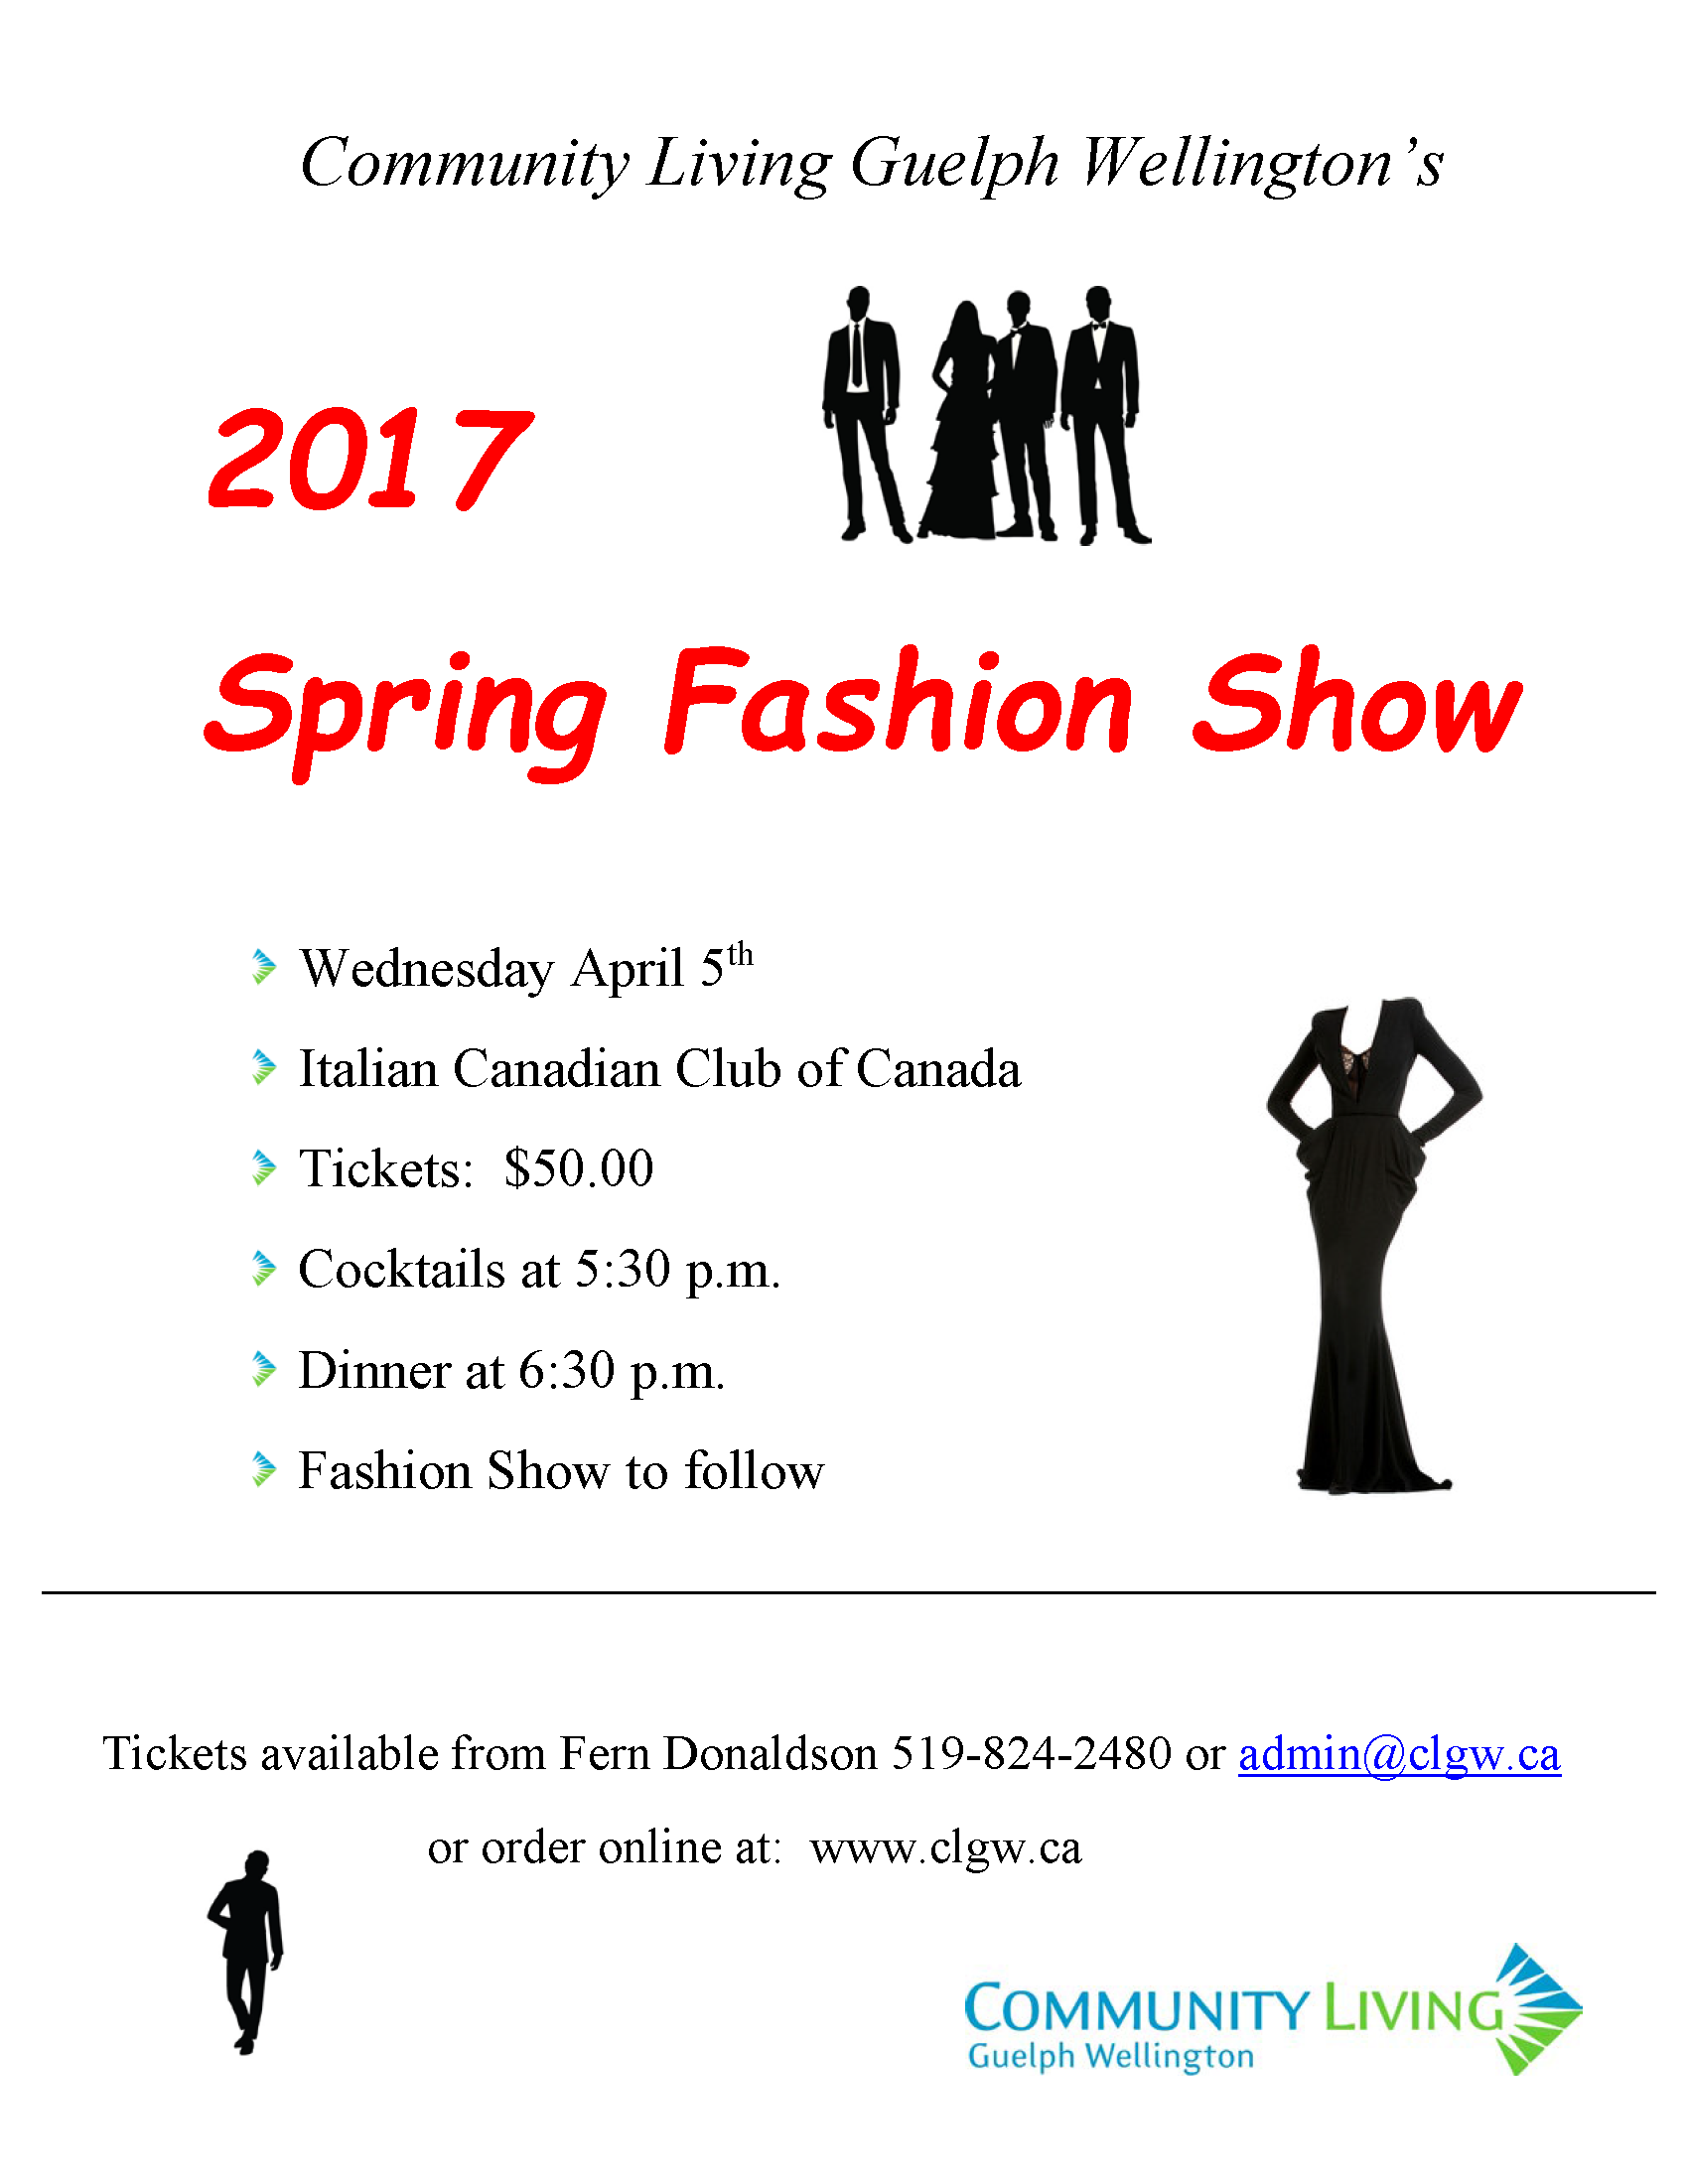 Fashion Show 2017 Flyer